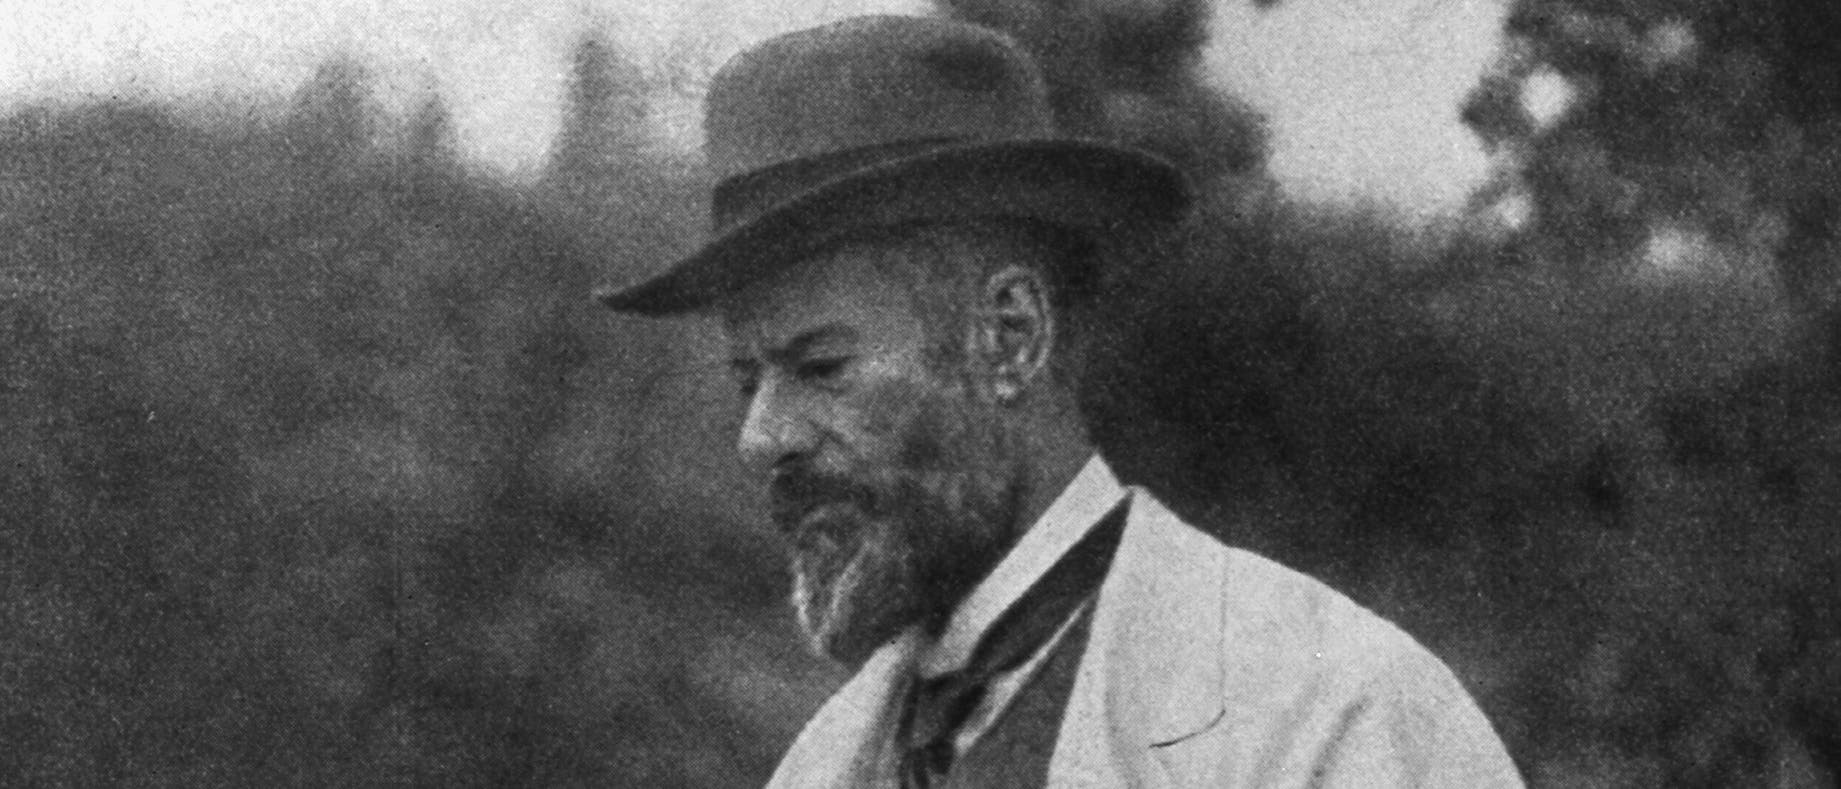 Der Soziologe Max Weber starb am 14. Juni 1920 in München.